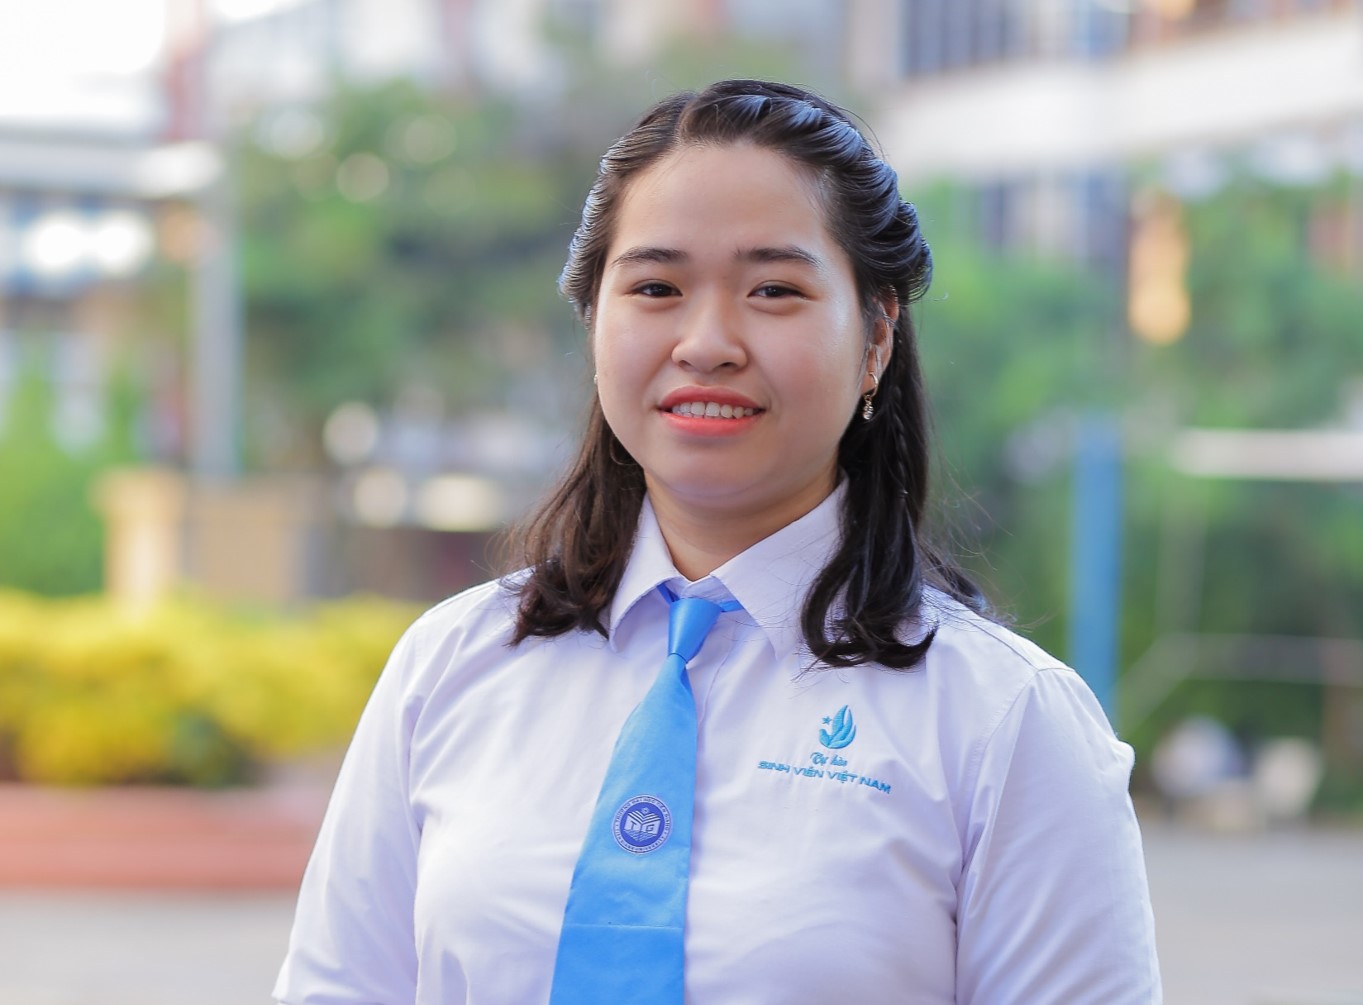 “Sinh viên 5 tốt” cấp tỉnh Nguyễn Ngọc Phương Duyên - “Chủ động học hỏi, không ngại khó khăn”